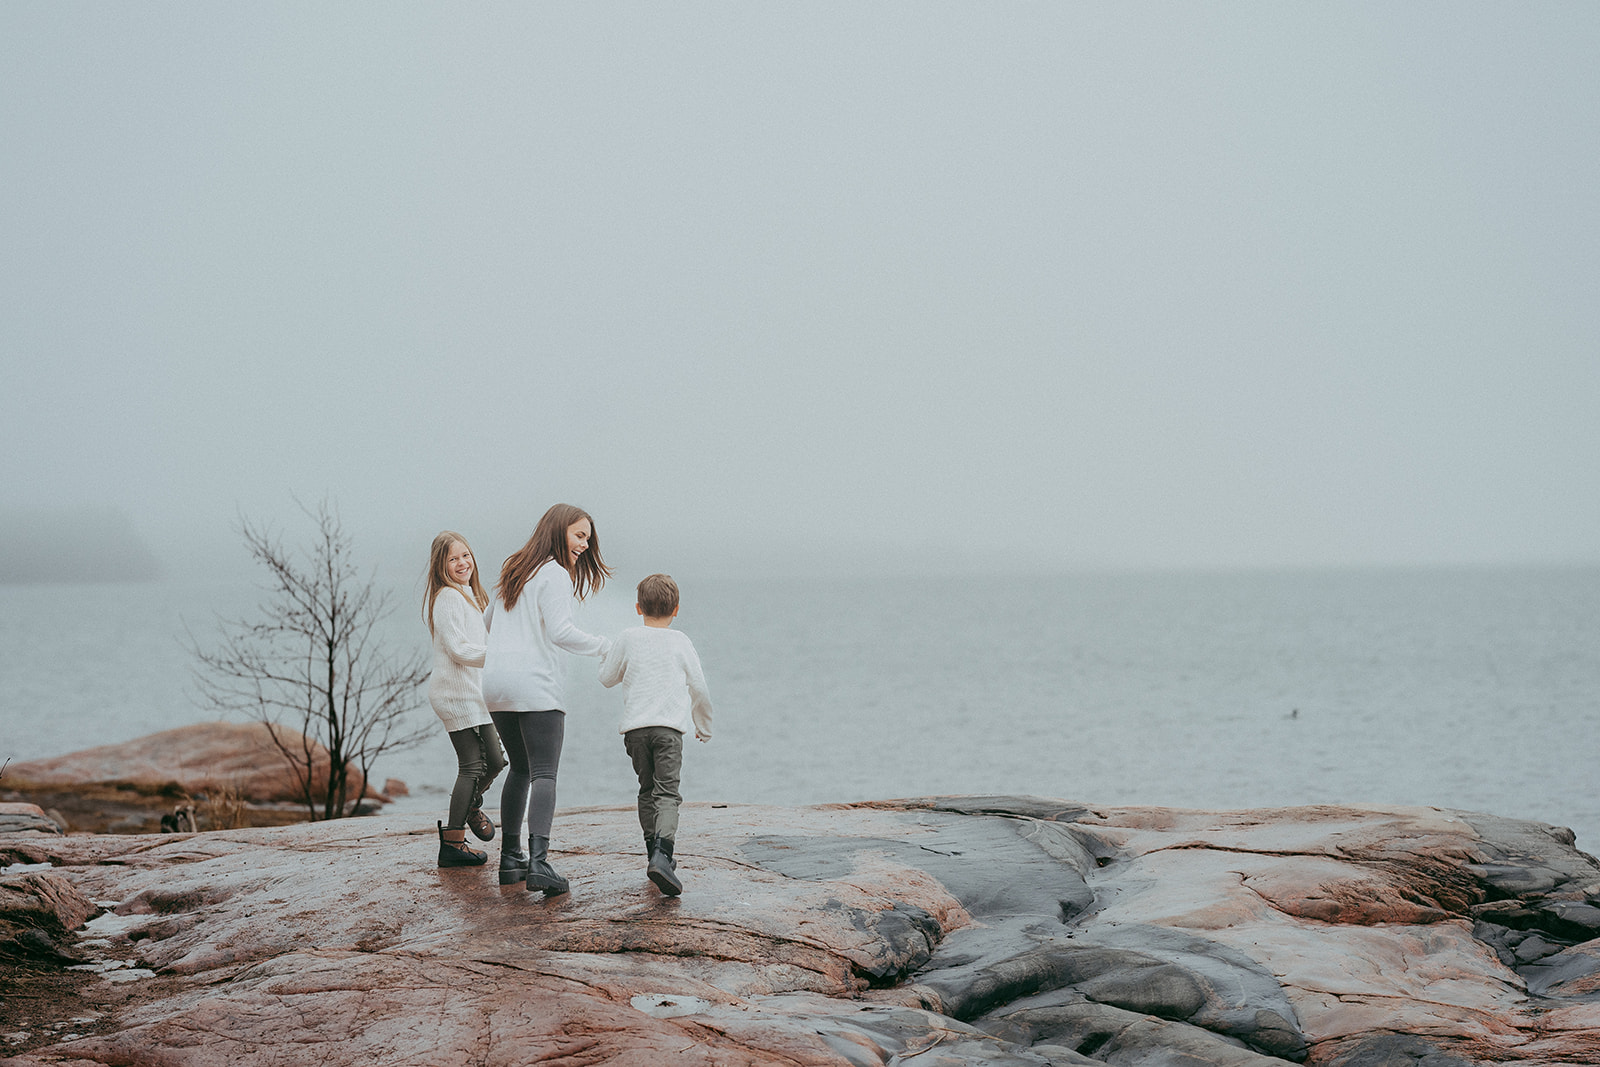 perhekuvaaja Helsinki ja Espoo - perhekuvaus Haukilahden rannalla talvi